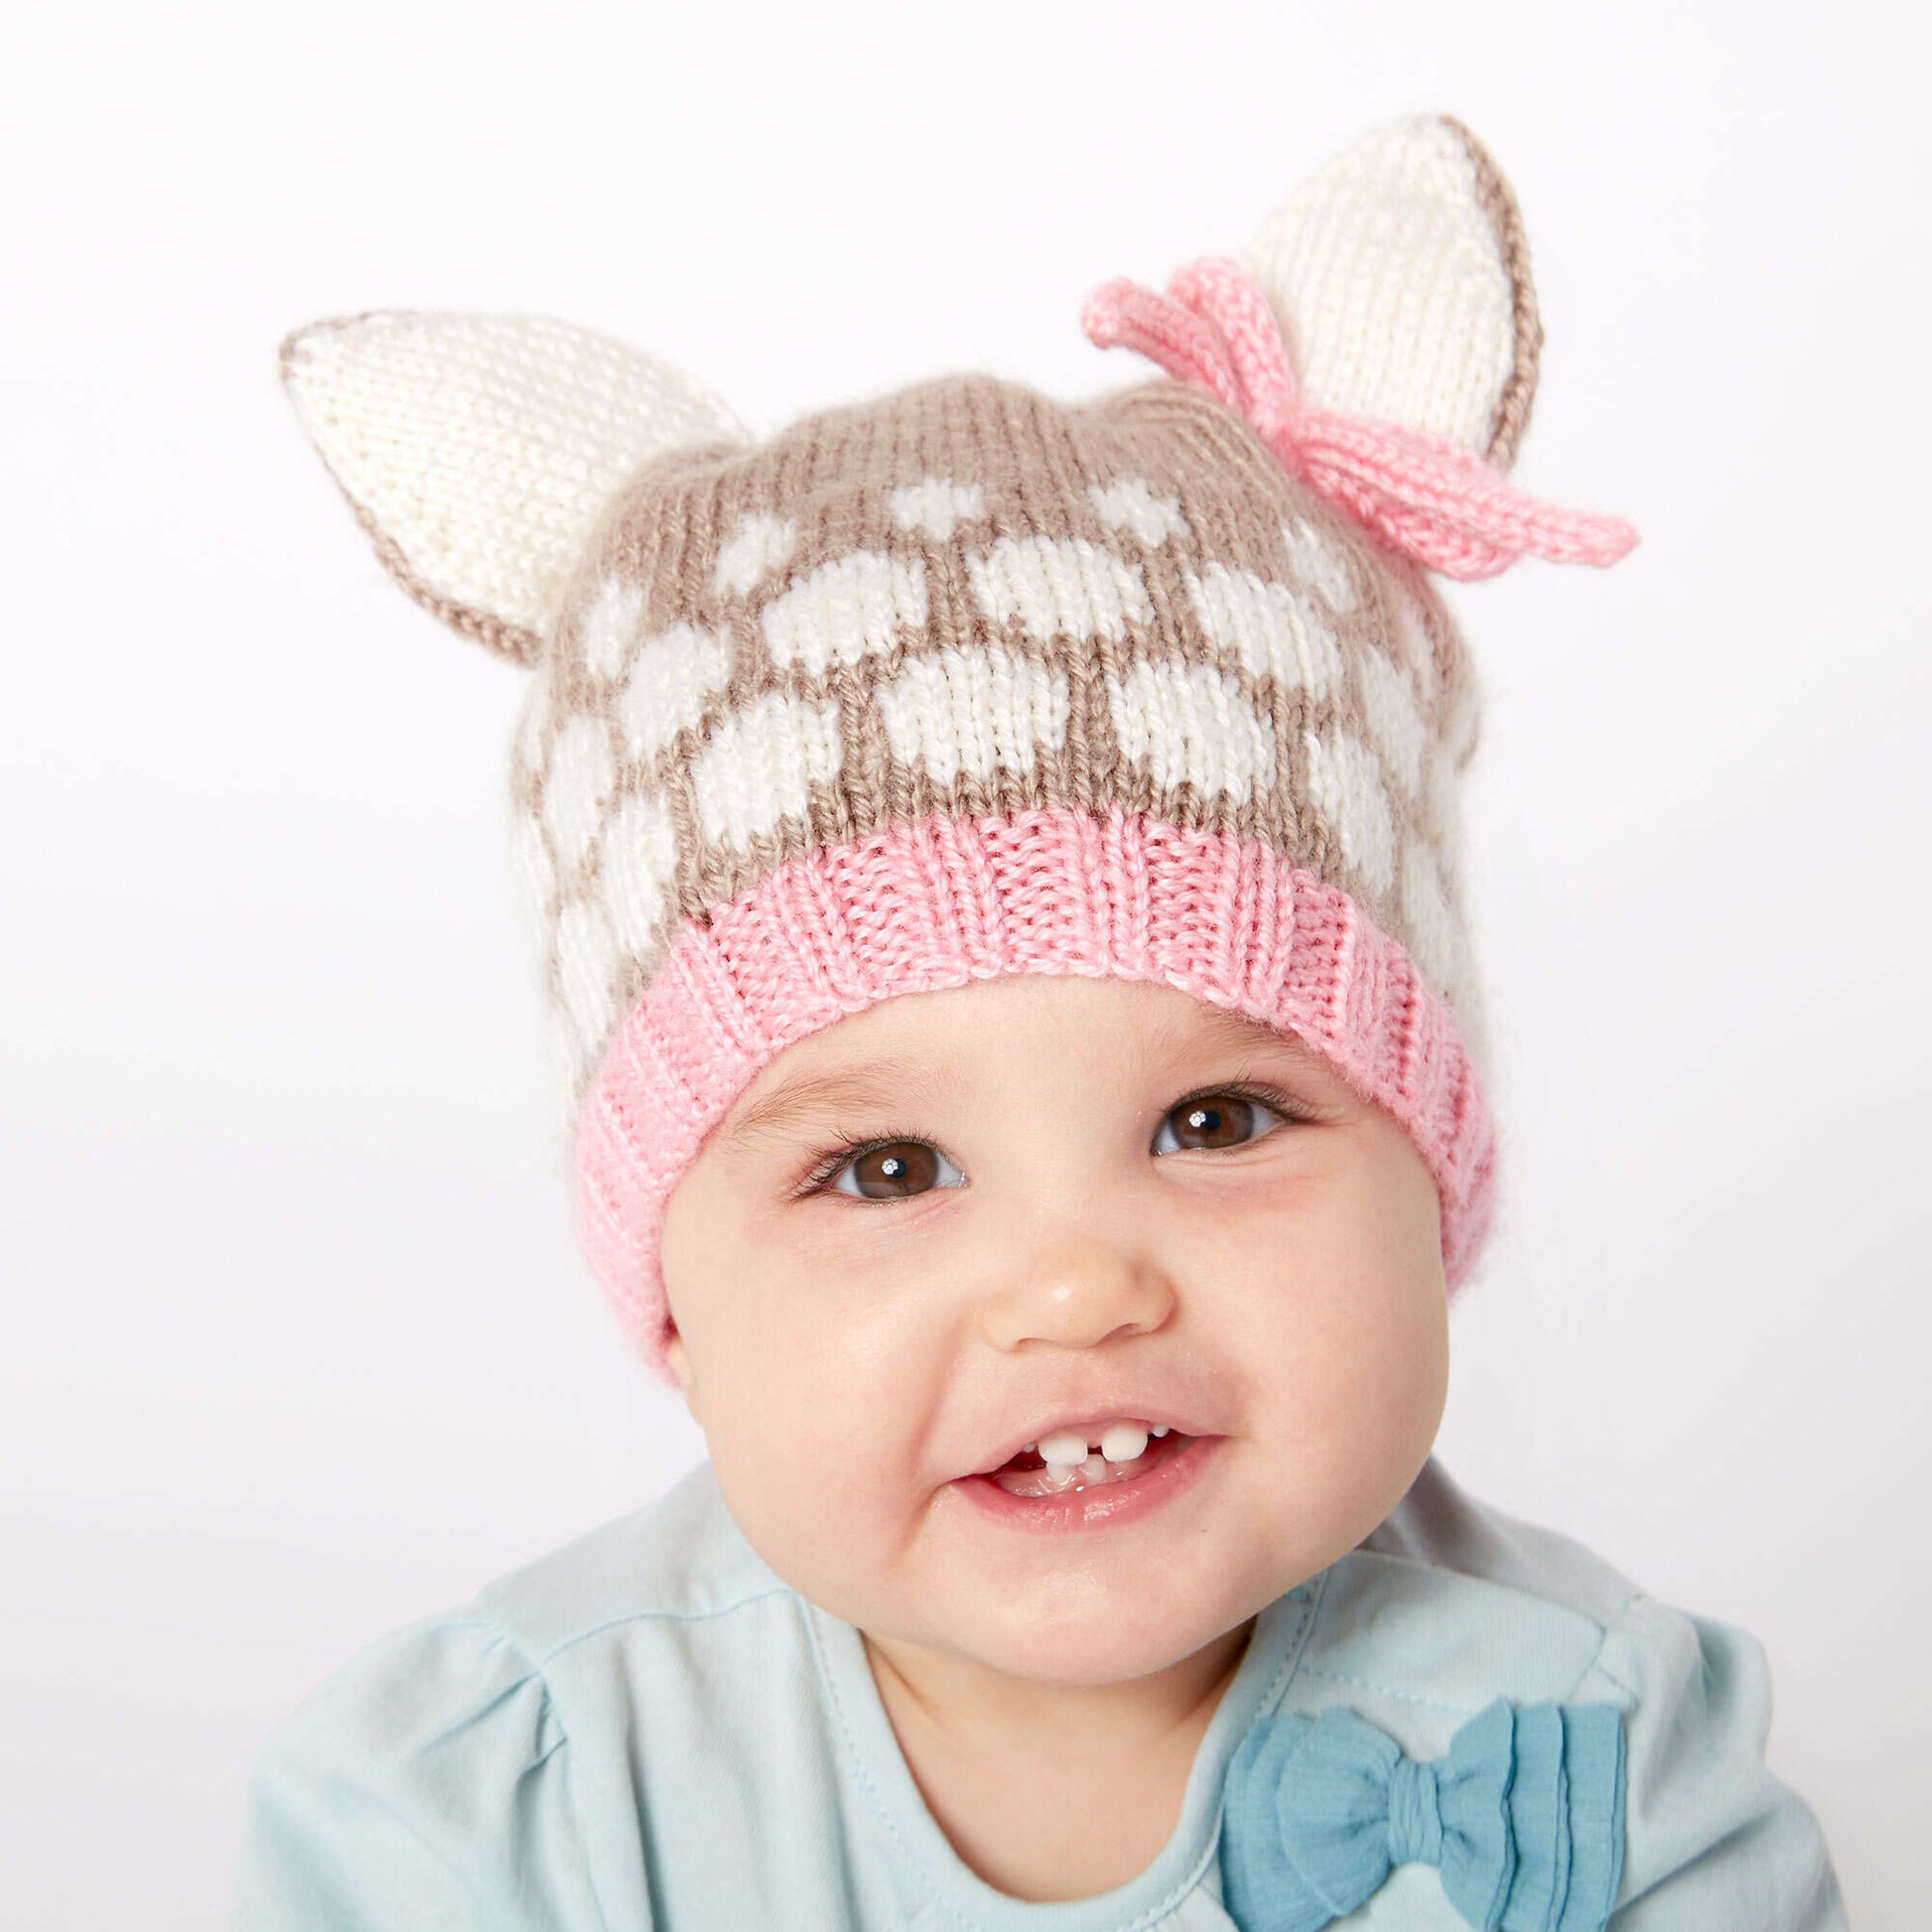 Bernat Speckled Fawn Hat Knit Hat made in Bernat Softee Baby yarn